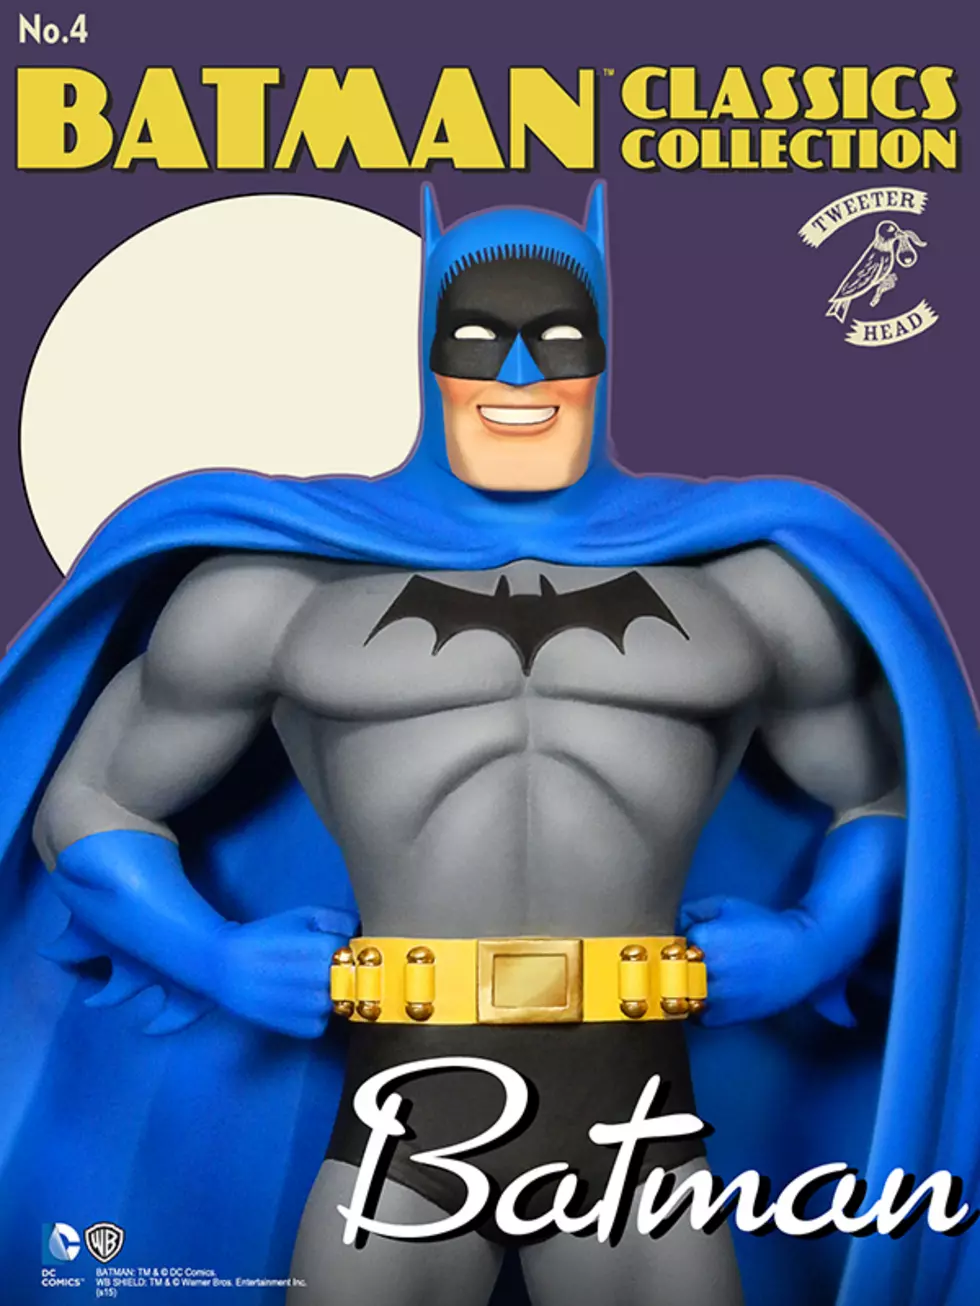 Tweeterhead Announces New Batman, Egghead Statues